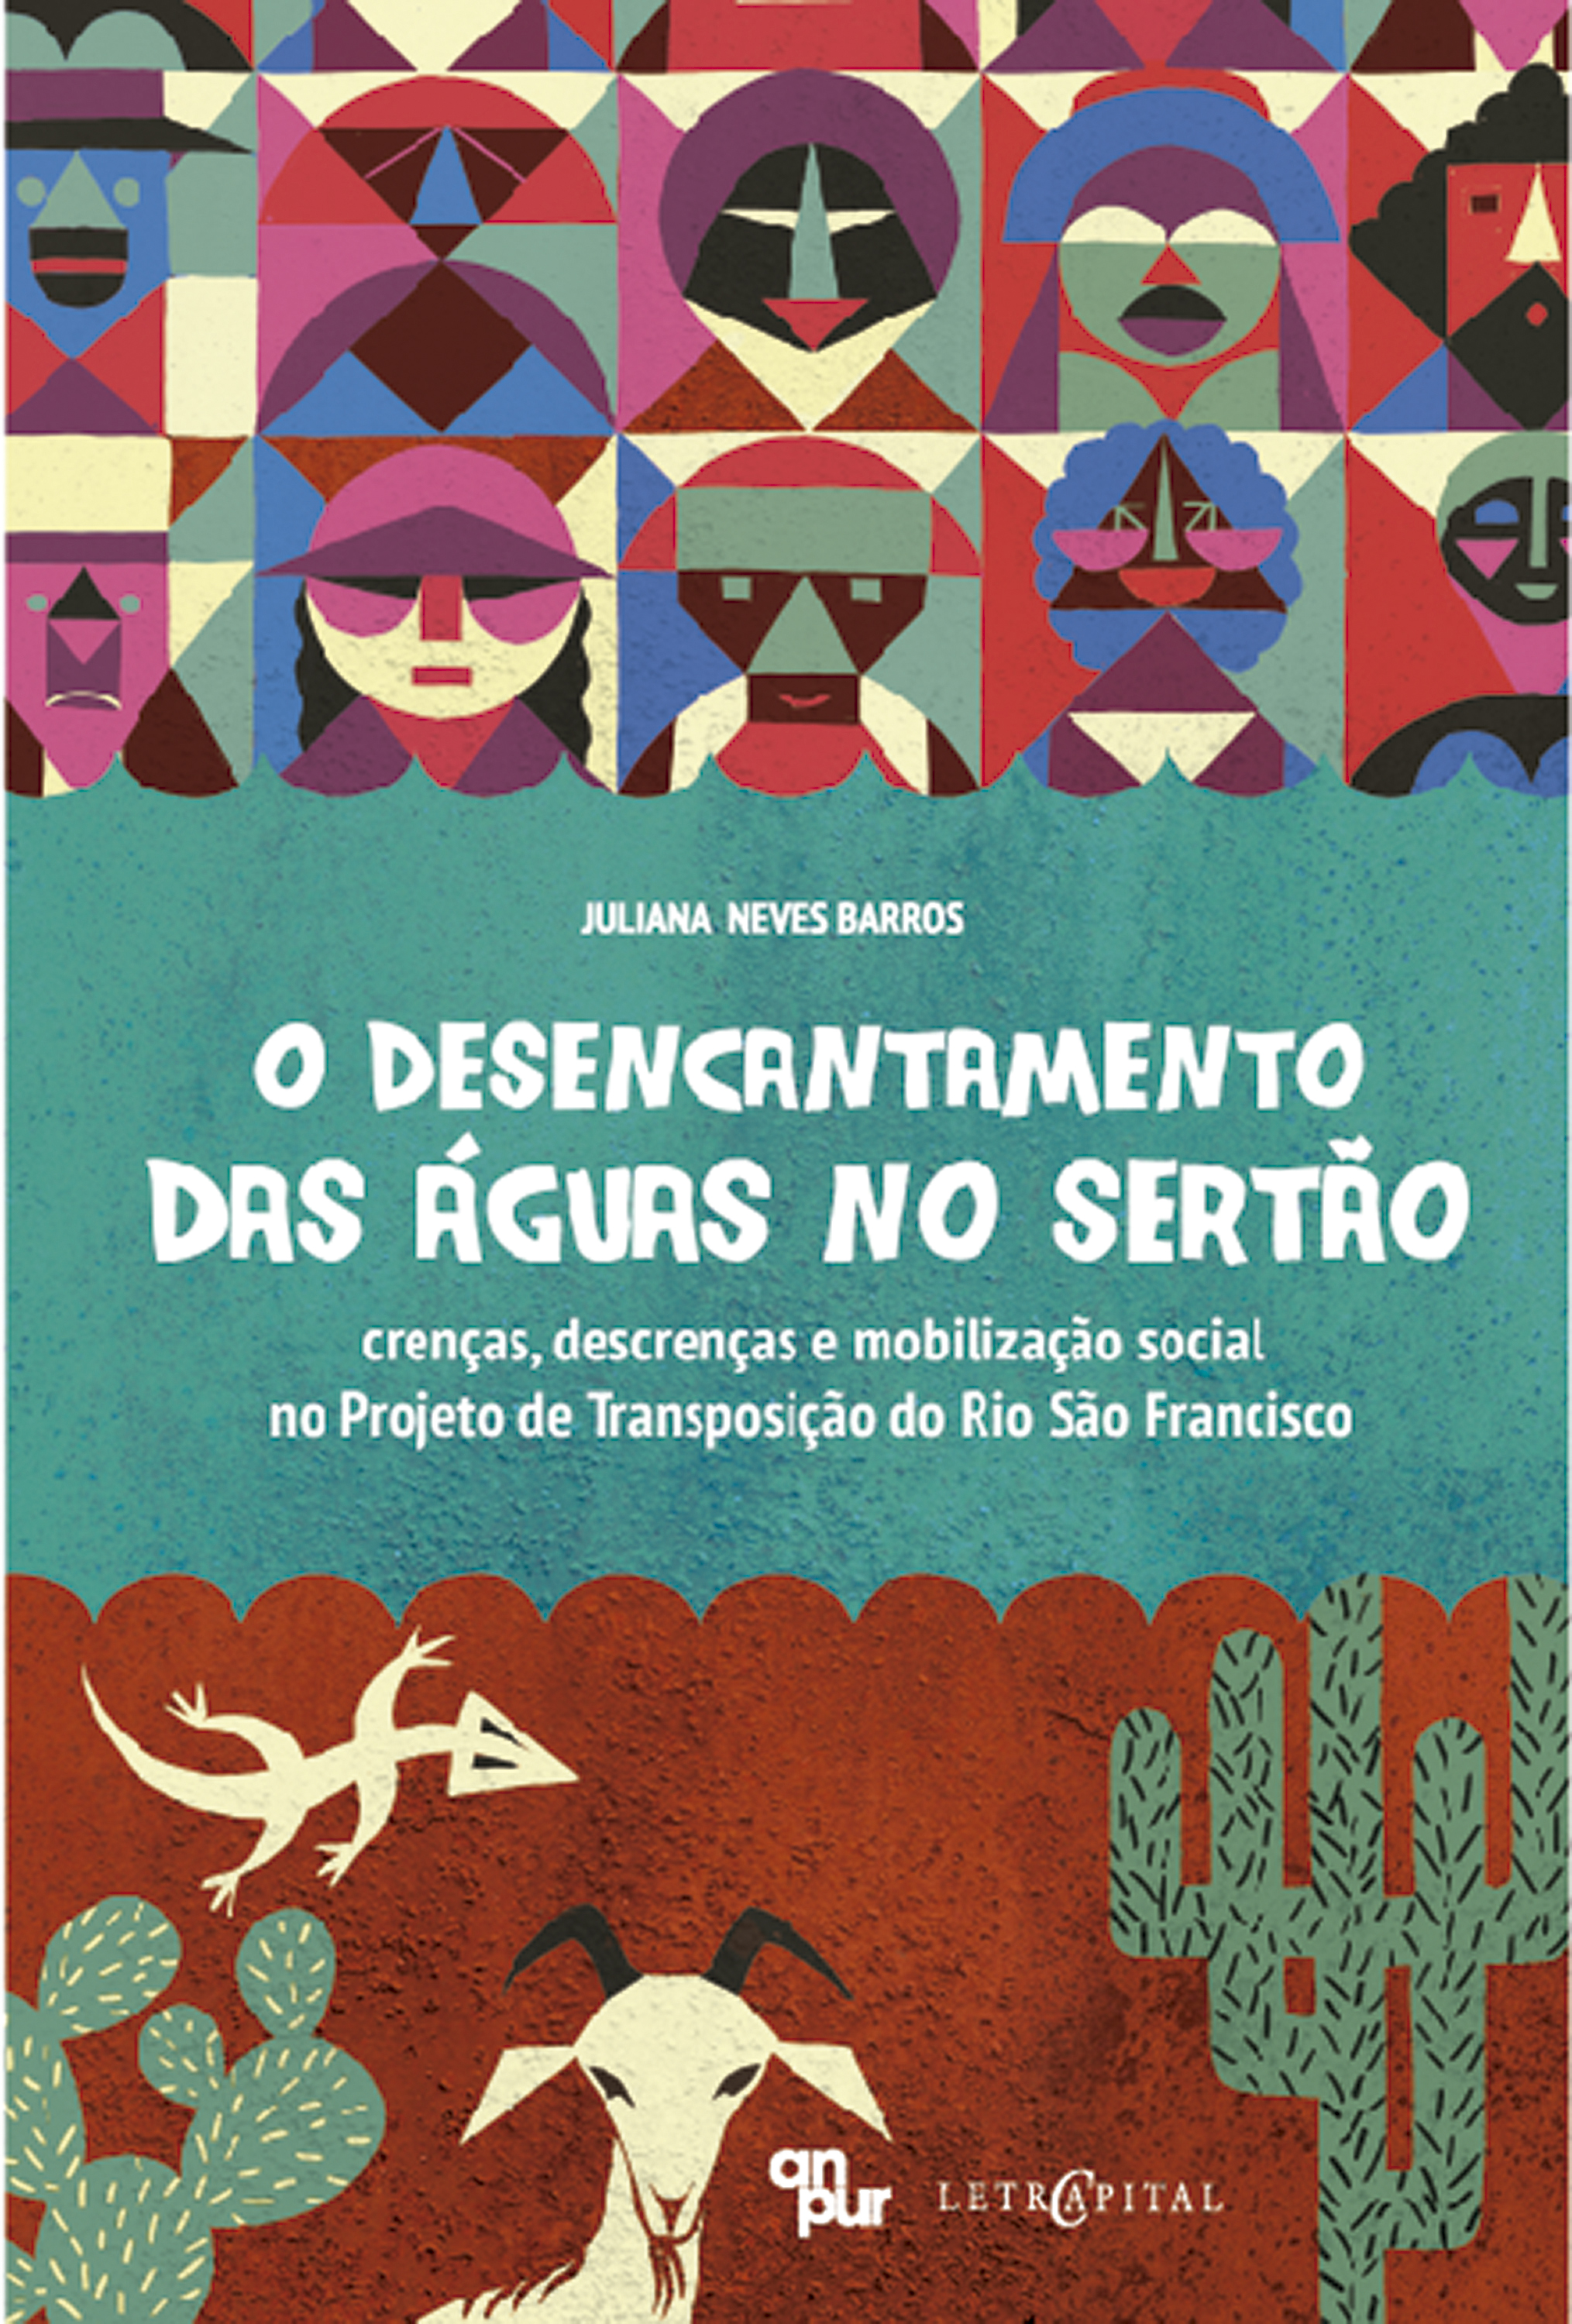 O DESENCANTAMENTO DAS ÁGUAS NO SERTÃO: crenças, descrenças e mobilização social no Projeto de Transposição do Rio São Francisco